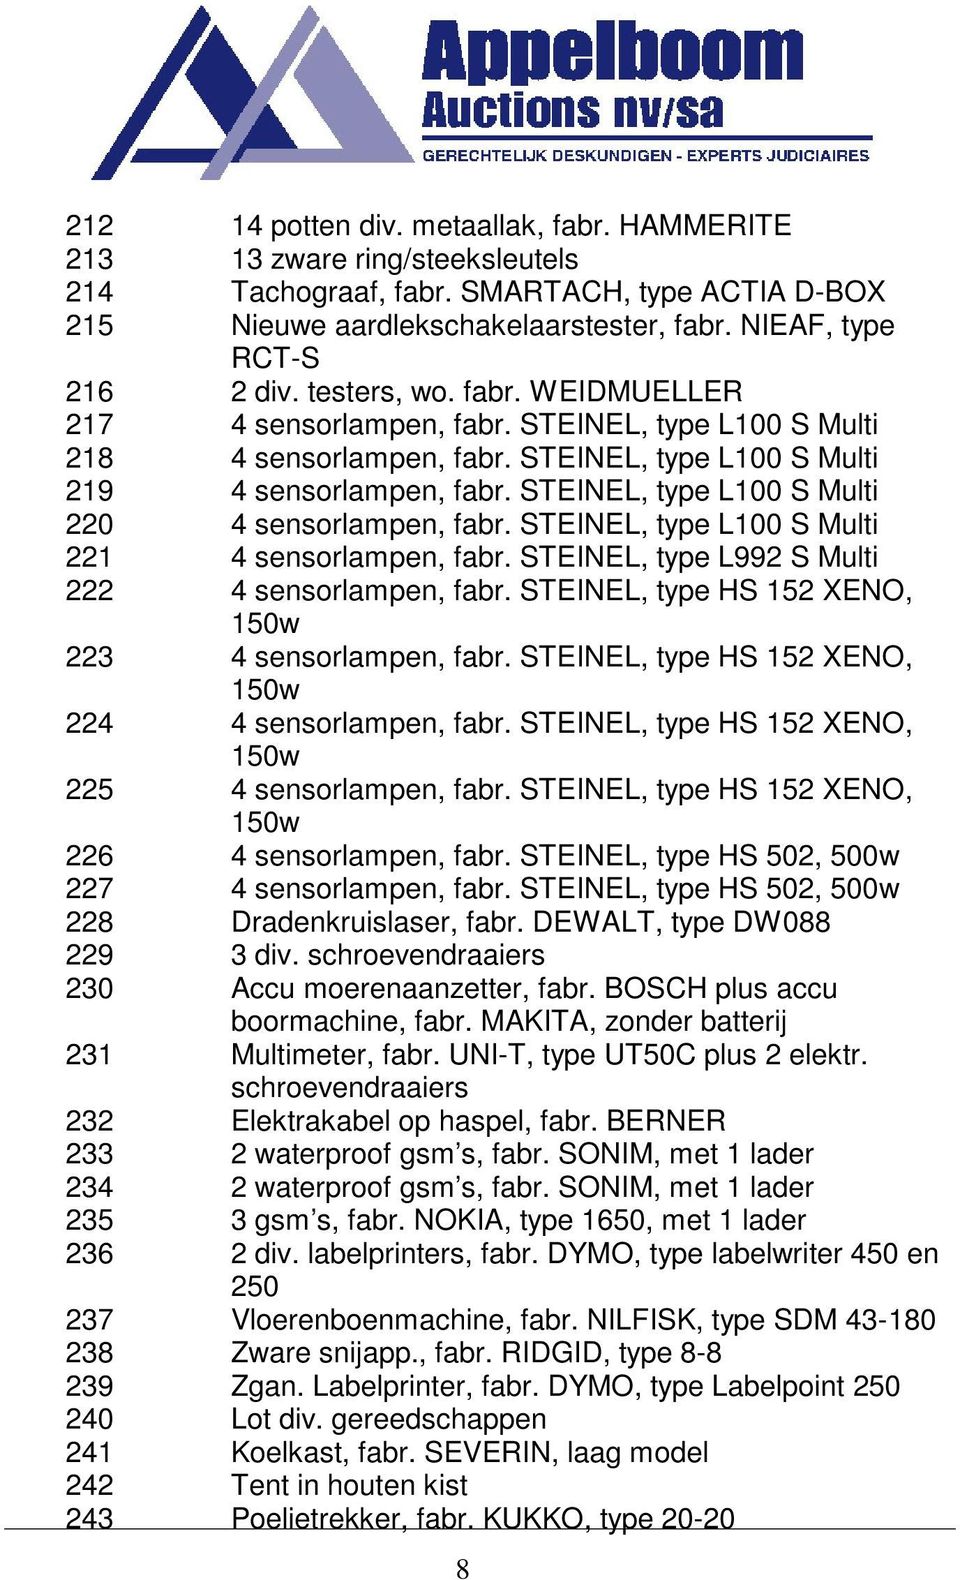 STEINEL, type L100 S Multi 220 4 sensorlampen, fabr. STEINEL, type L100 S Multi 221 4 sensorlampen, fabr. STEINEL, type L992 S Multi 222 4 sensorlampen, fabr.